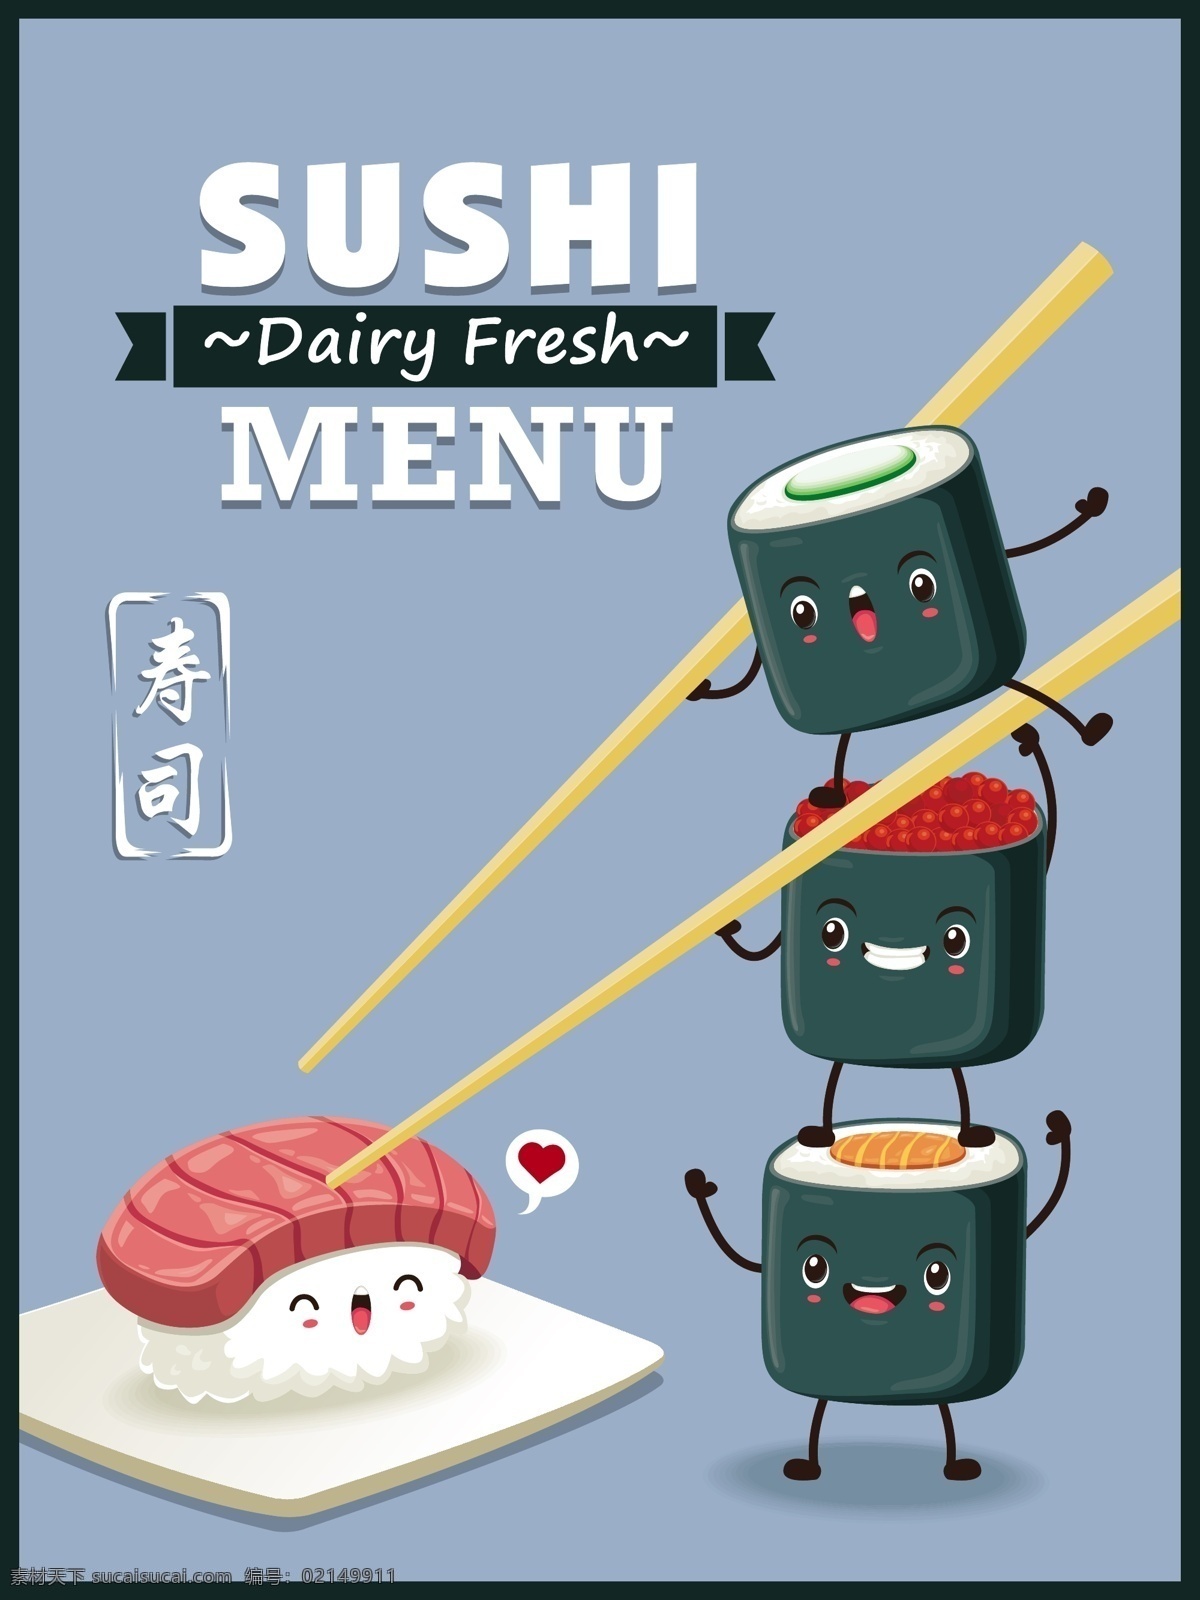 可爱 的卡 通 寿司 矢量 可爱寿司 时尚表情 卡通寿司 三文鱼 日本料理 日本美食 美味食物 餐饮美食 生活百科 矢量素材 青色 天蓝色